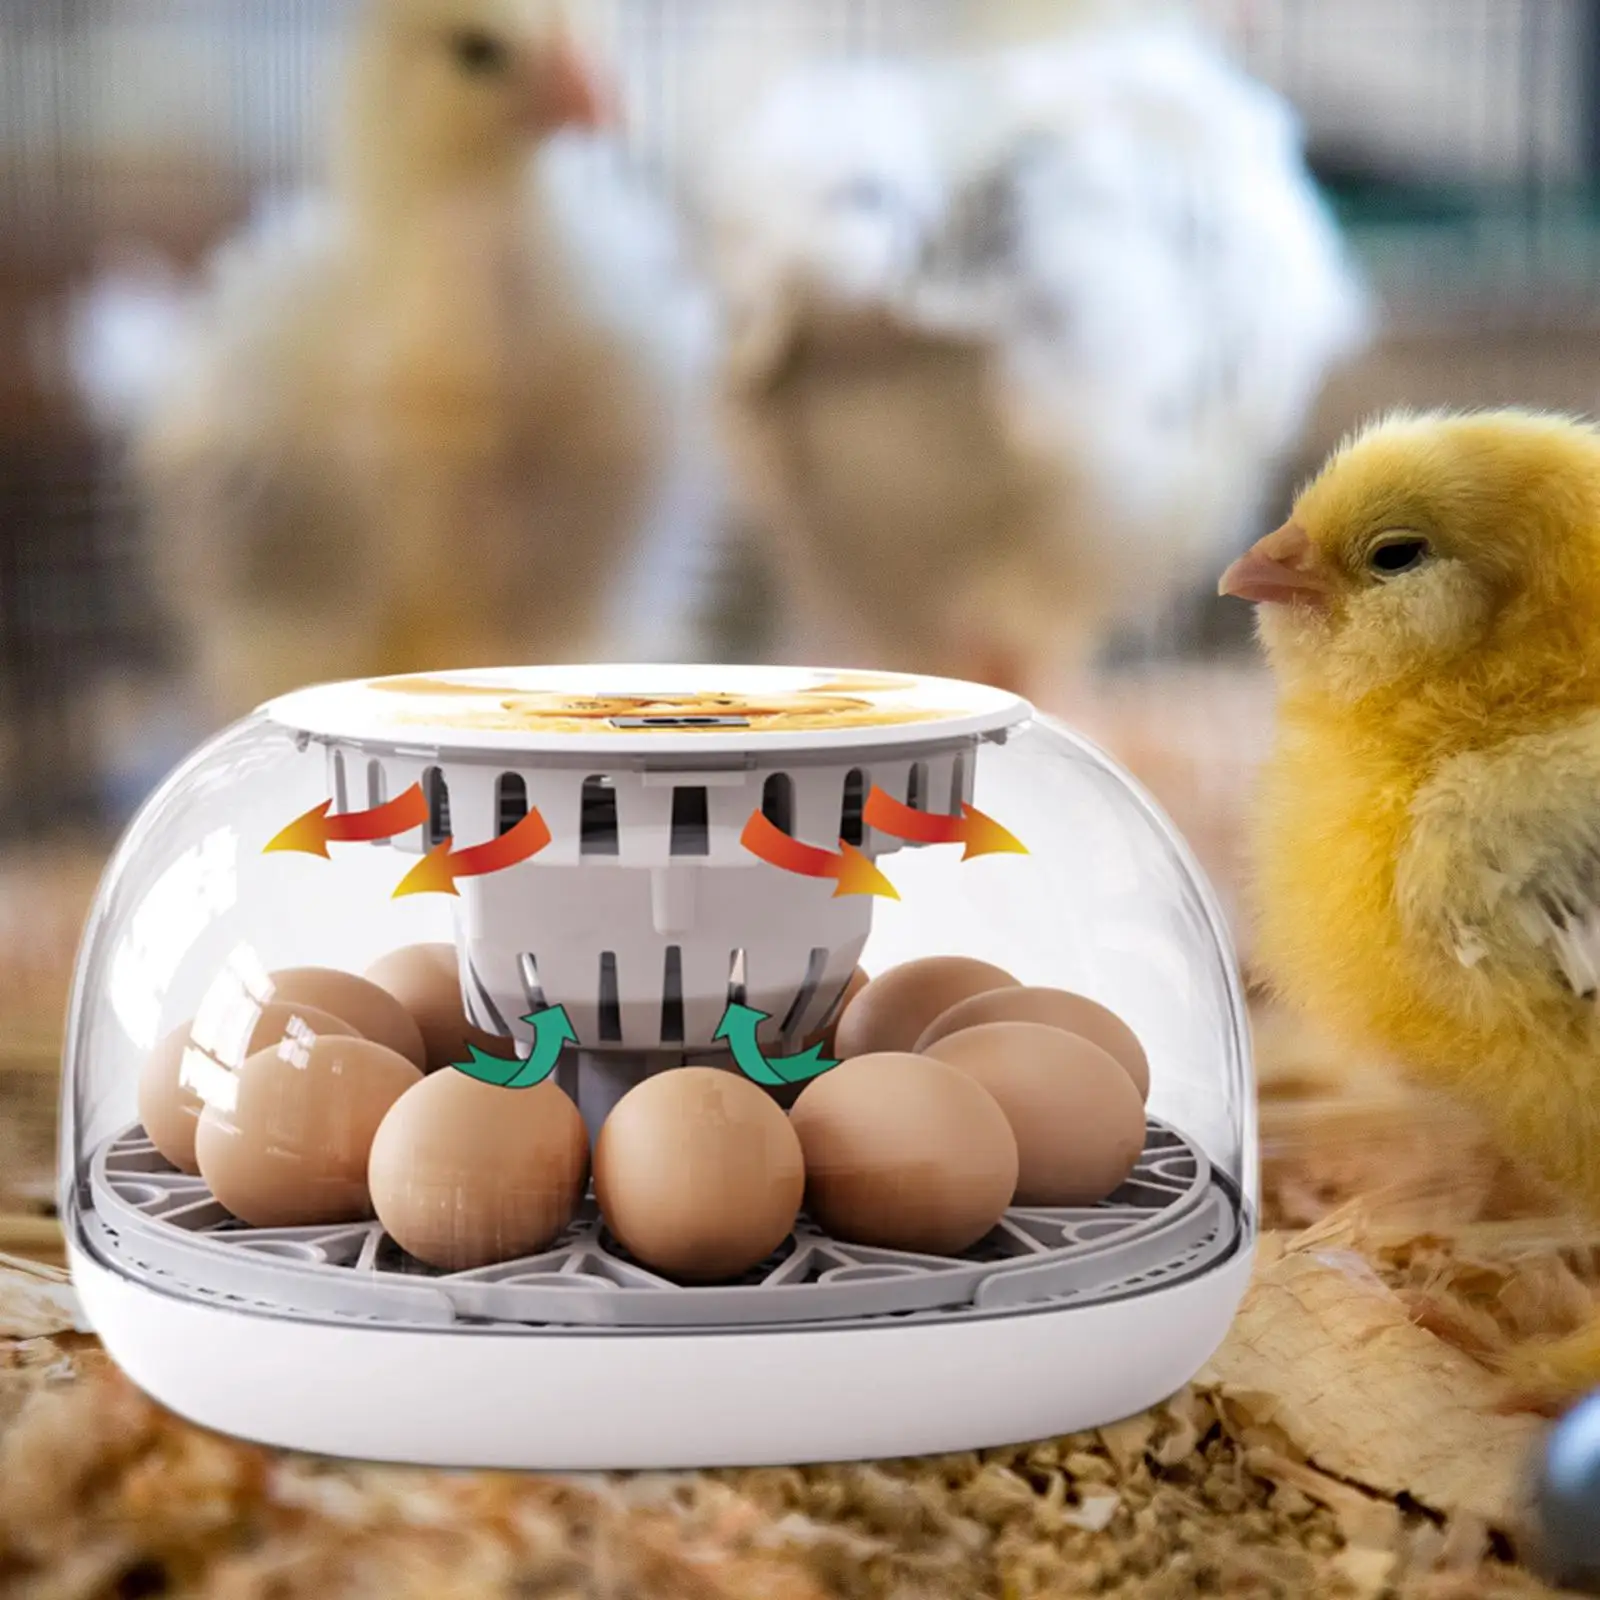 

Инкубатор для яиц, ручной инкубатор с прозрачной крышкой и контролем температуры, инкубатор для цыплят гусиных яиц